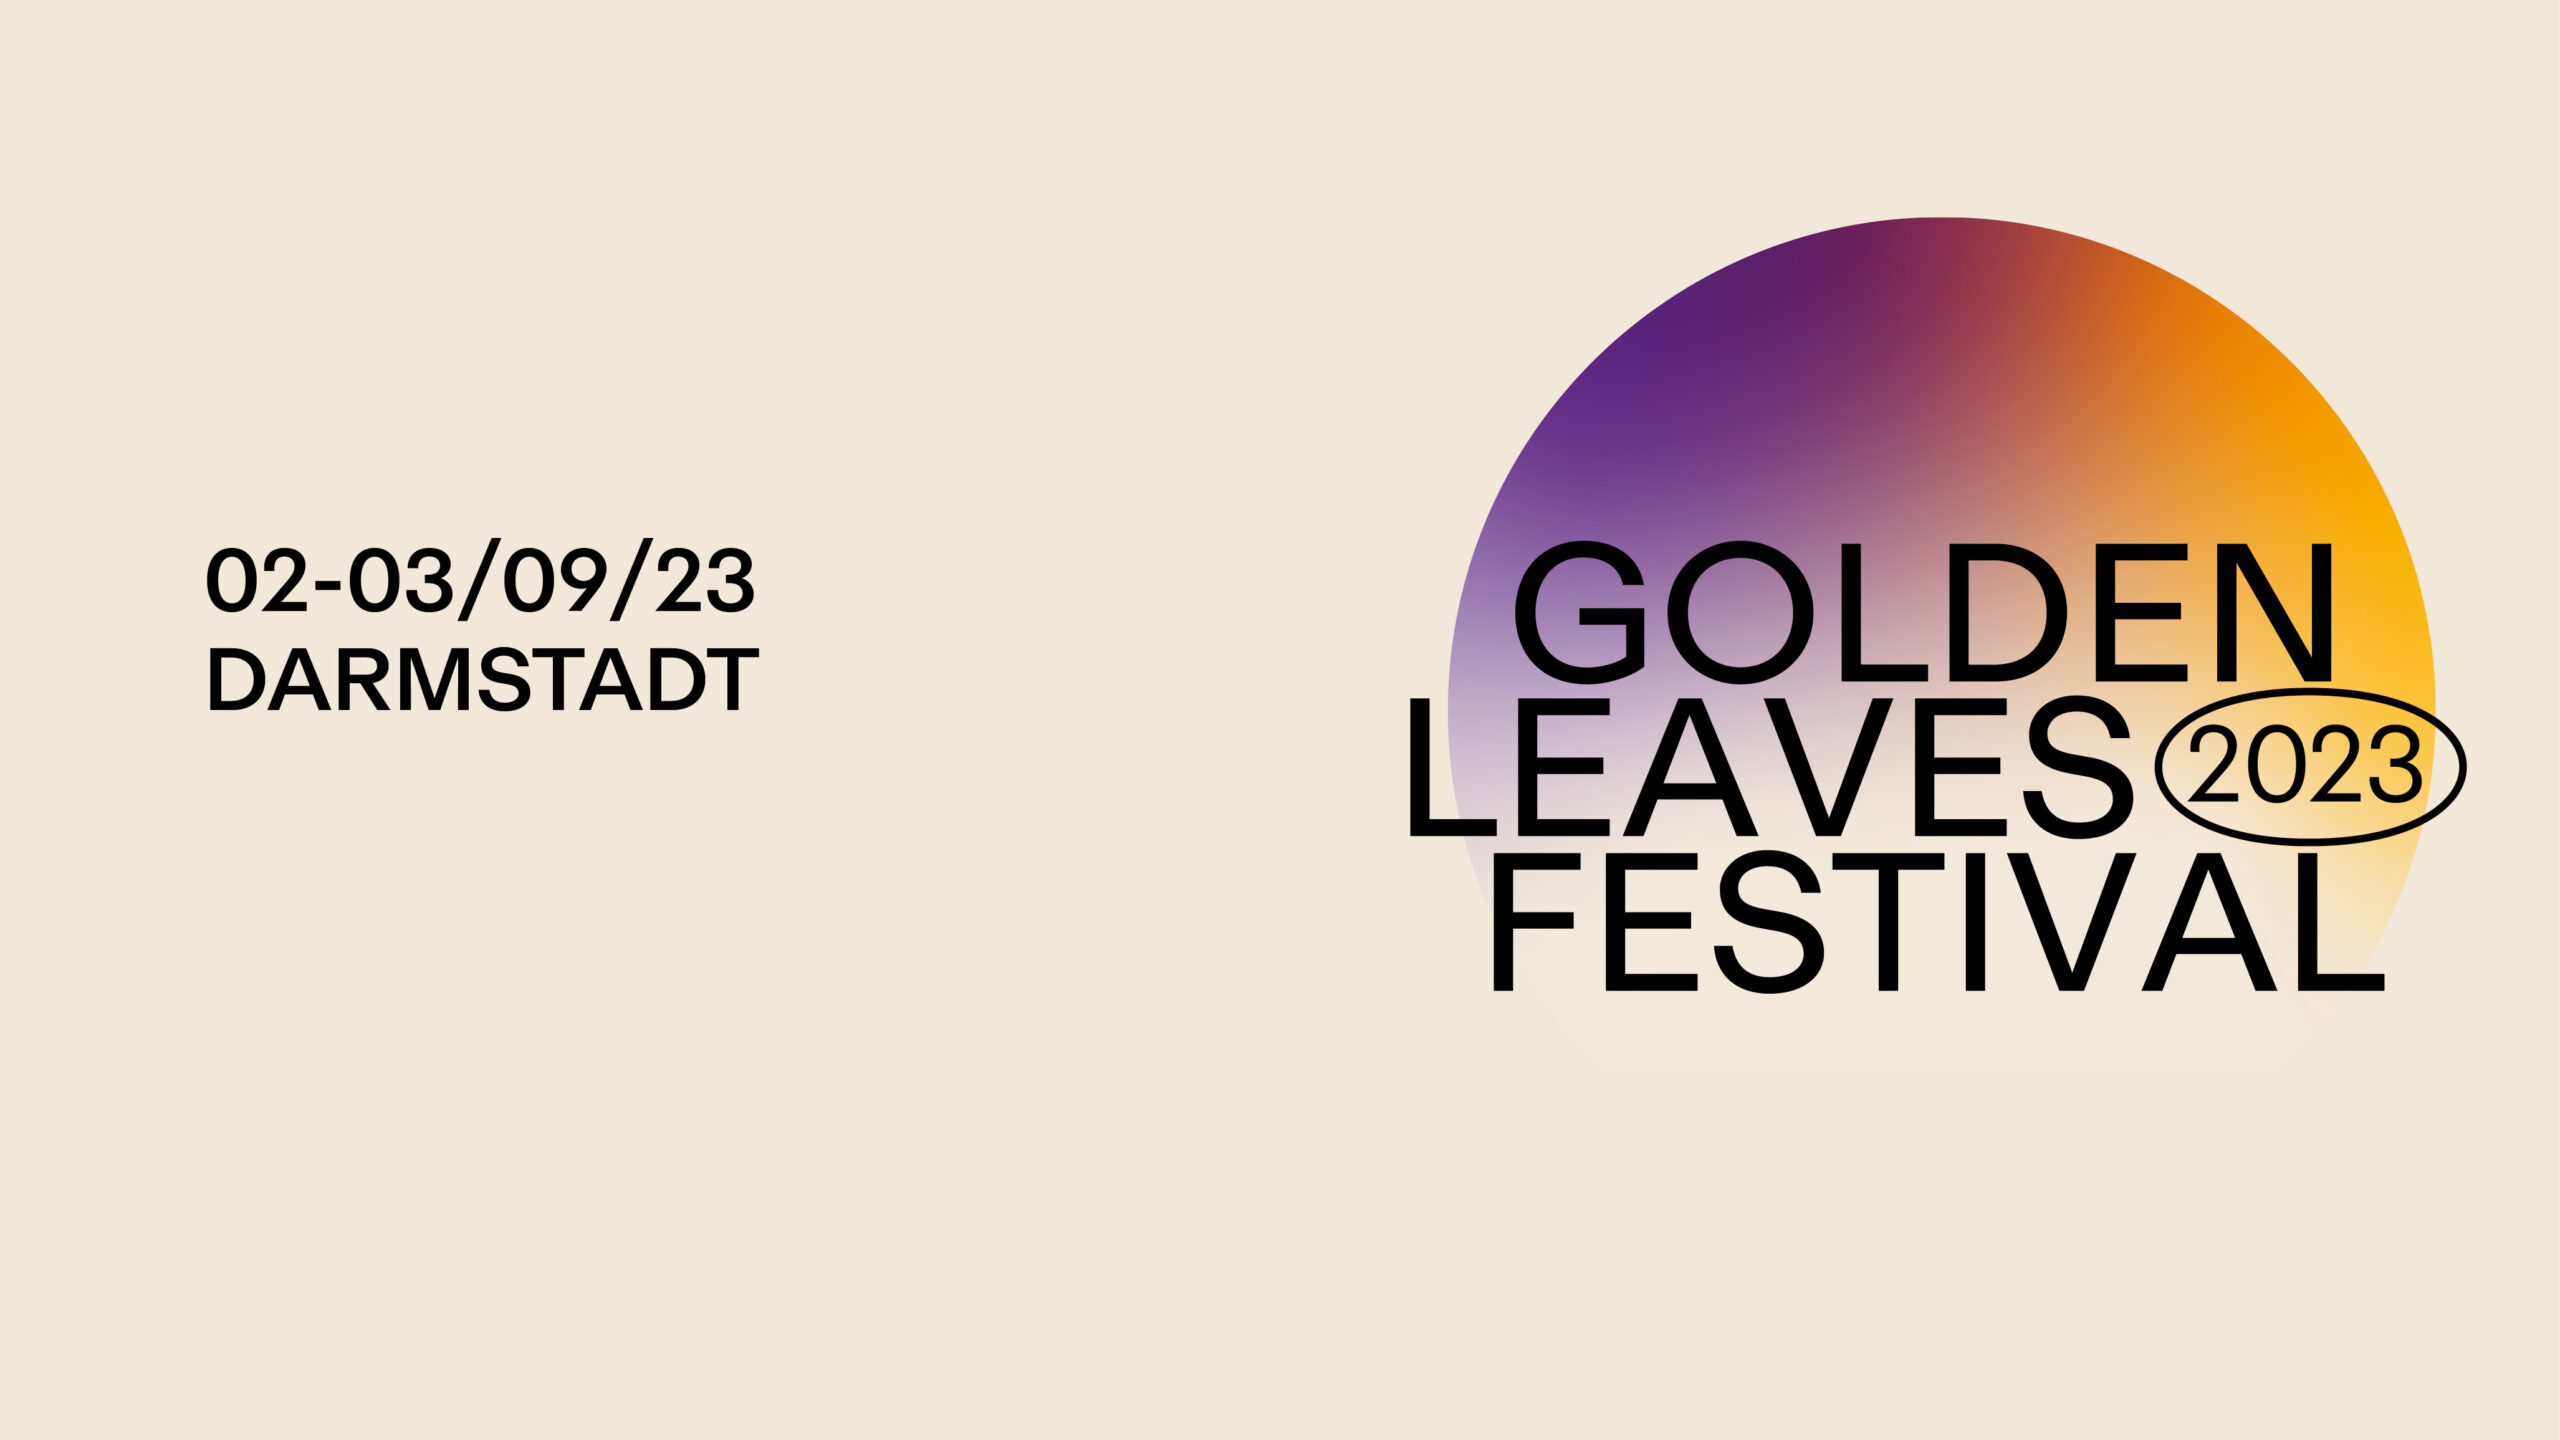 GOLDEN LEAVES FESTIVAL 2023 – 1, 2, 3 – VVK-Start